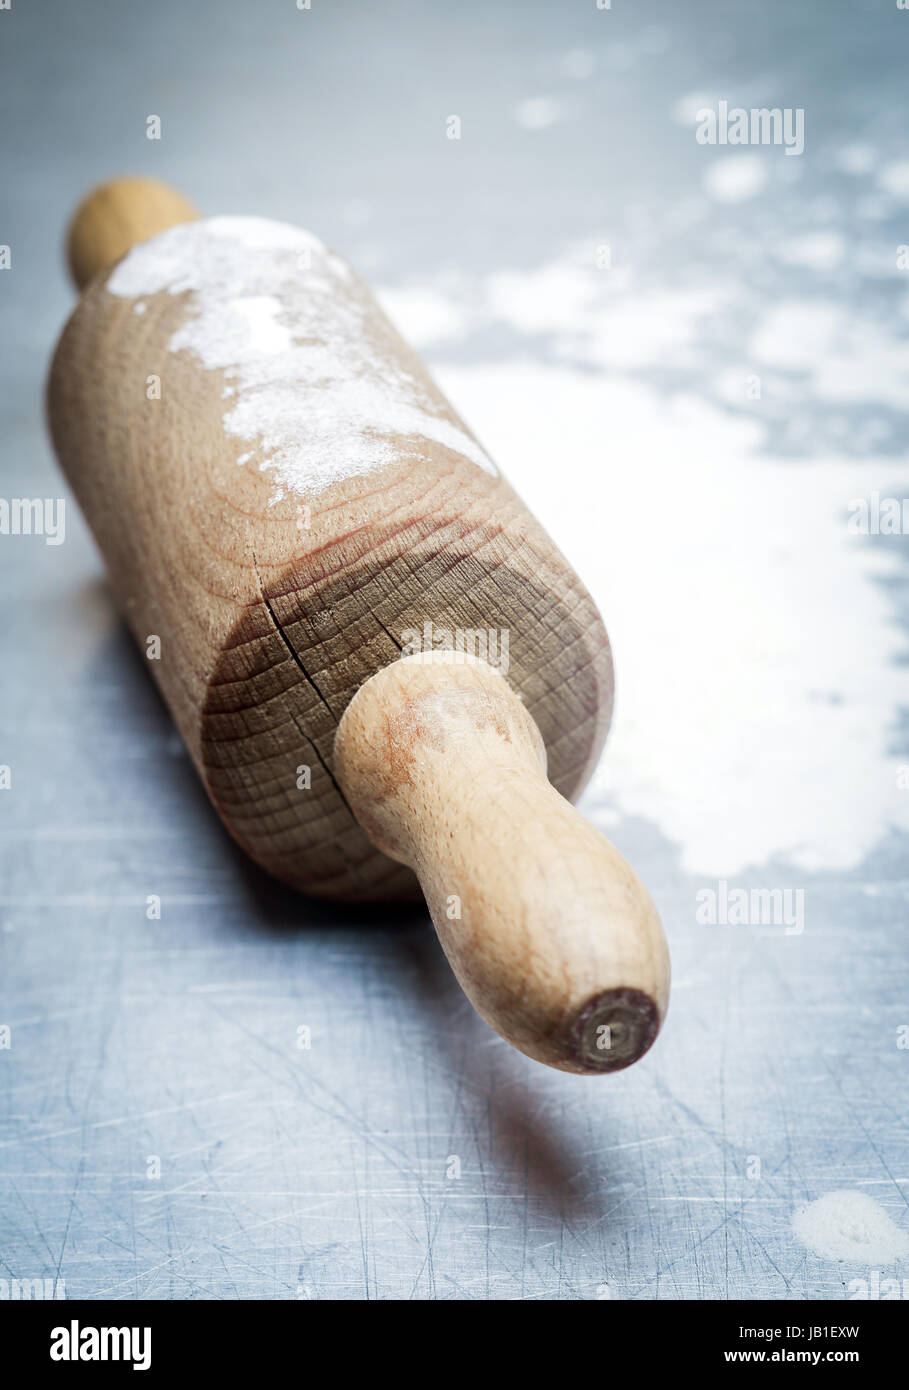 In legno antico mattarello con farina sparsi su una cucina blu superficie durante la cottura di dolci fatti in casa o la pizza Foto Stock